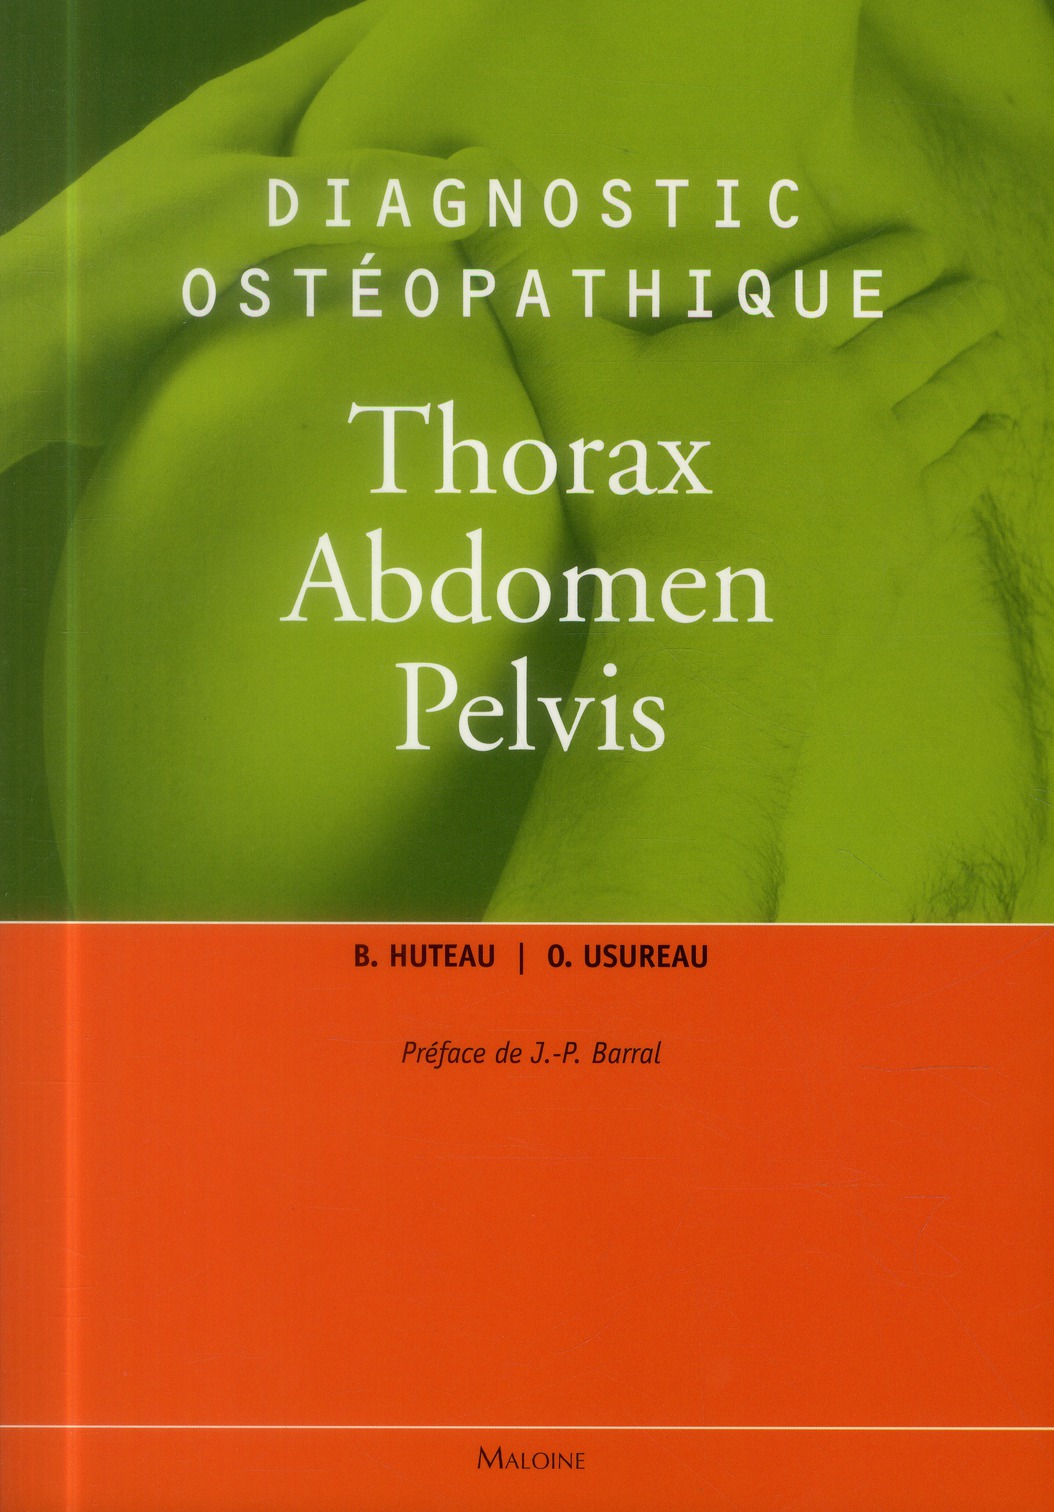 DIAGNOSTIC OSTEOPATHIQUE THORAX, ABDOMEN, PELVIS